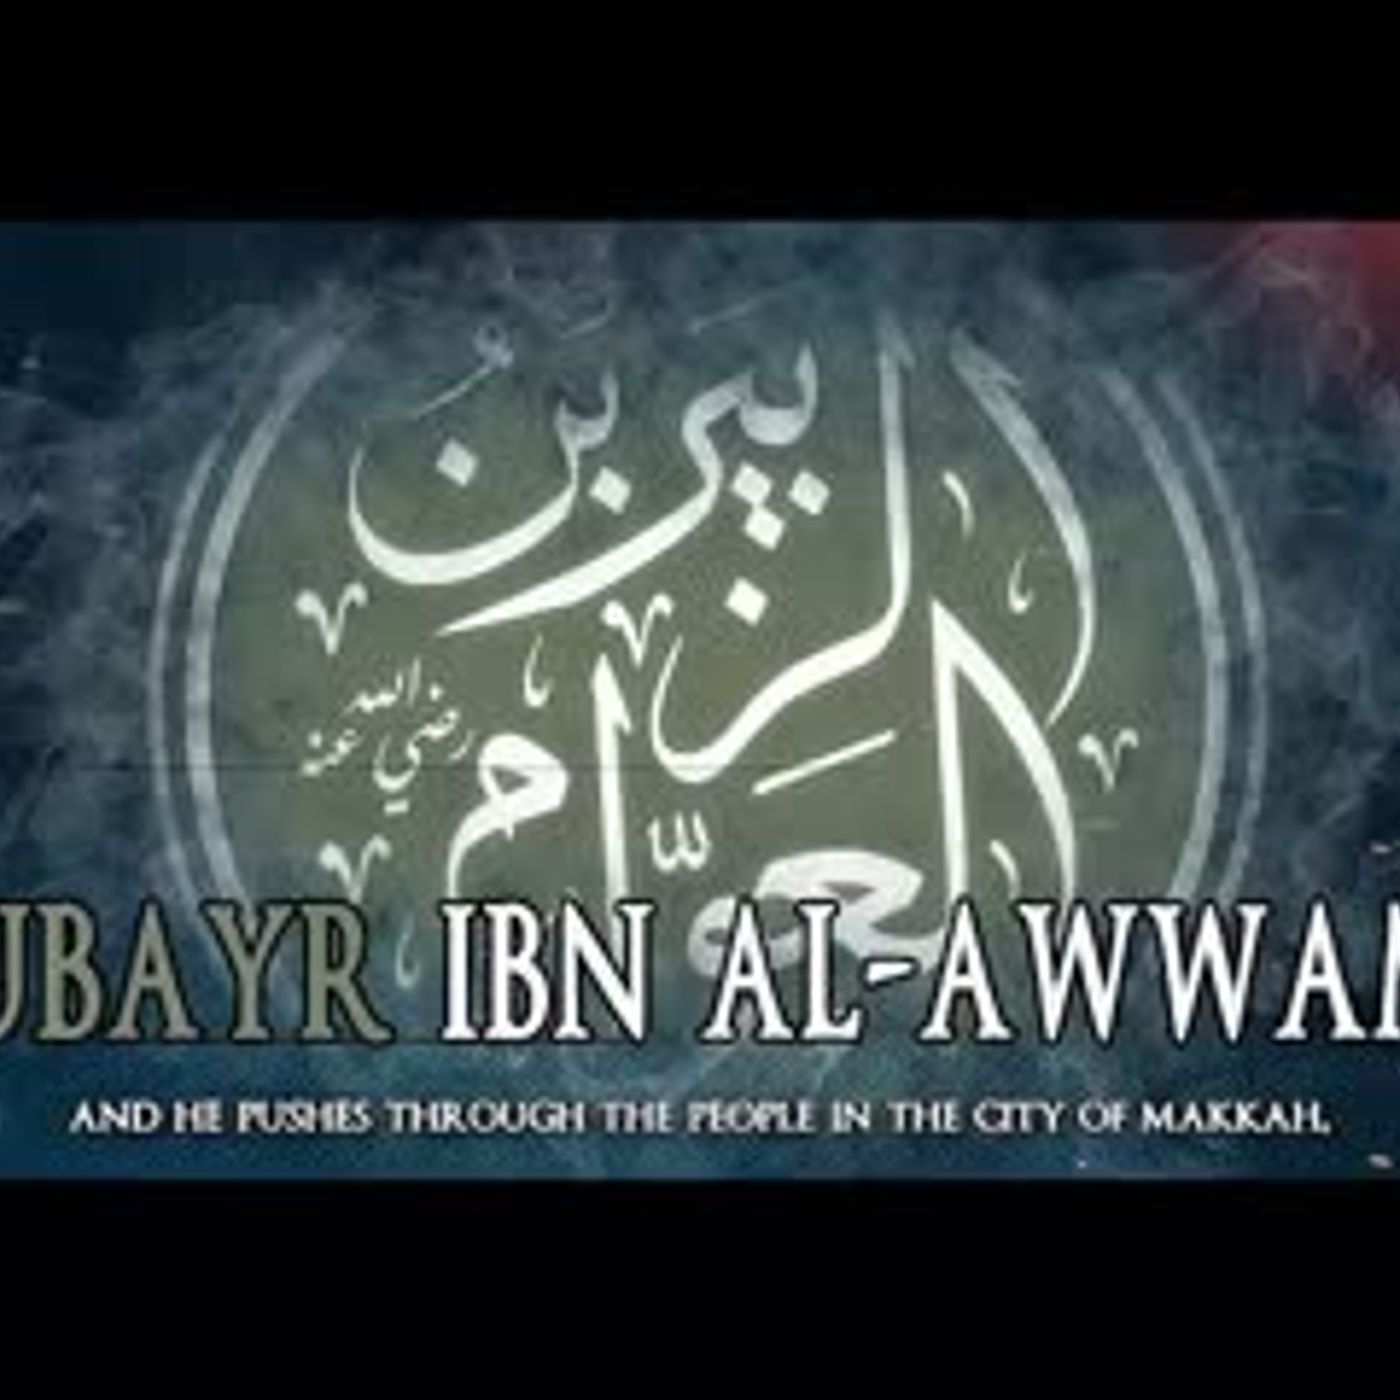 Az-Zubayr Ibn Al Awwam RA